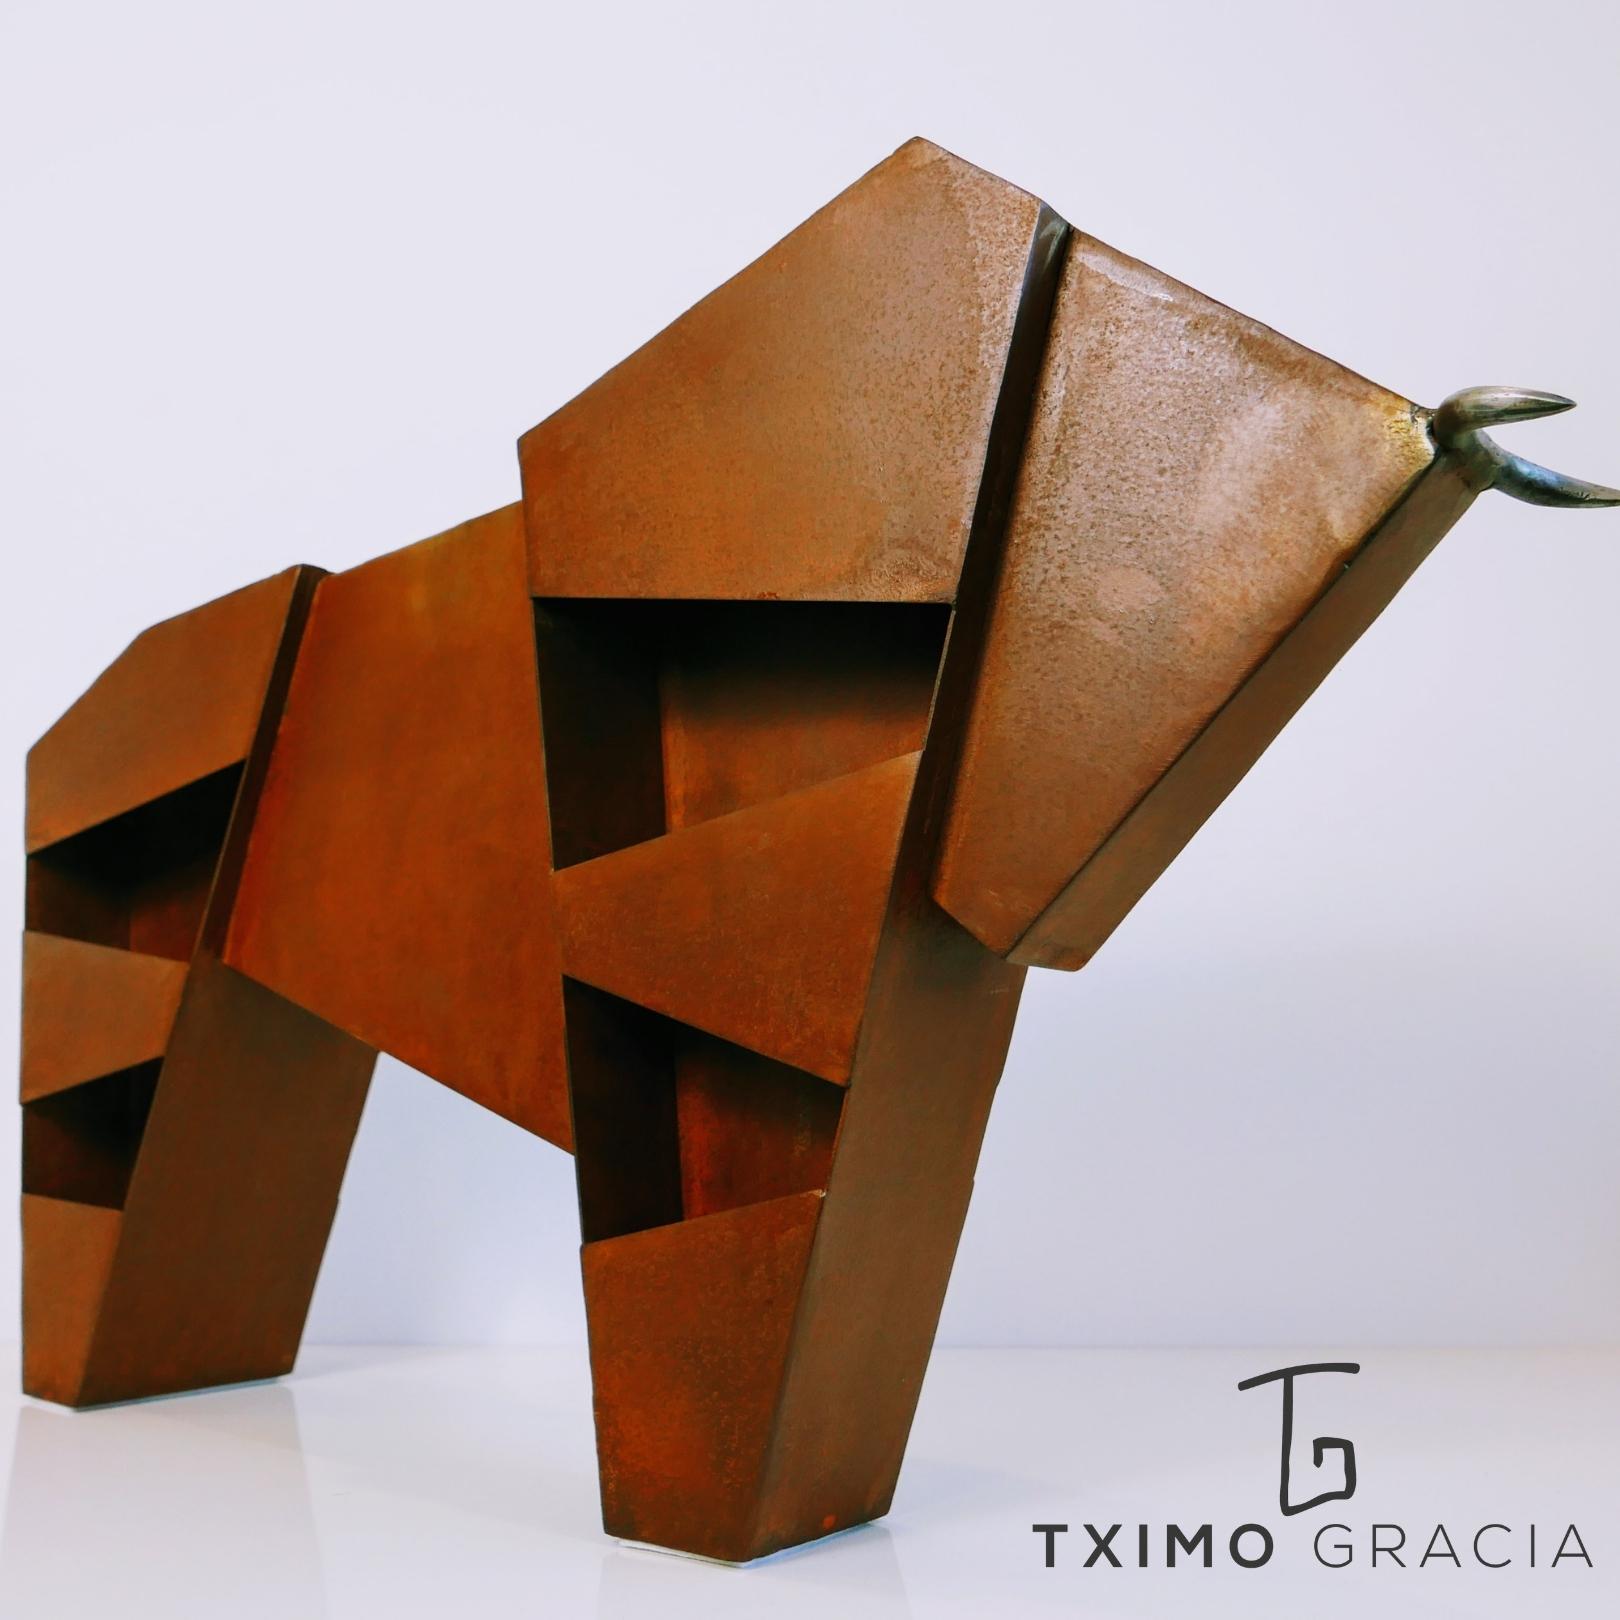 Toro 3 (2019) - Joaquín Gracia - Tximo Gracia